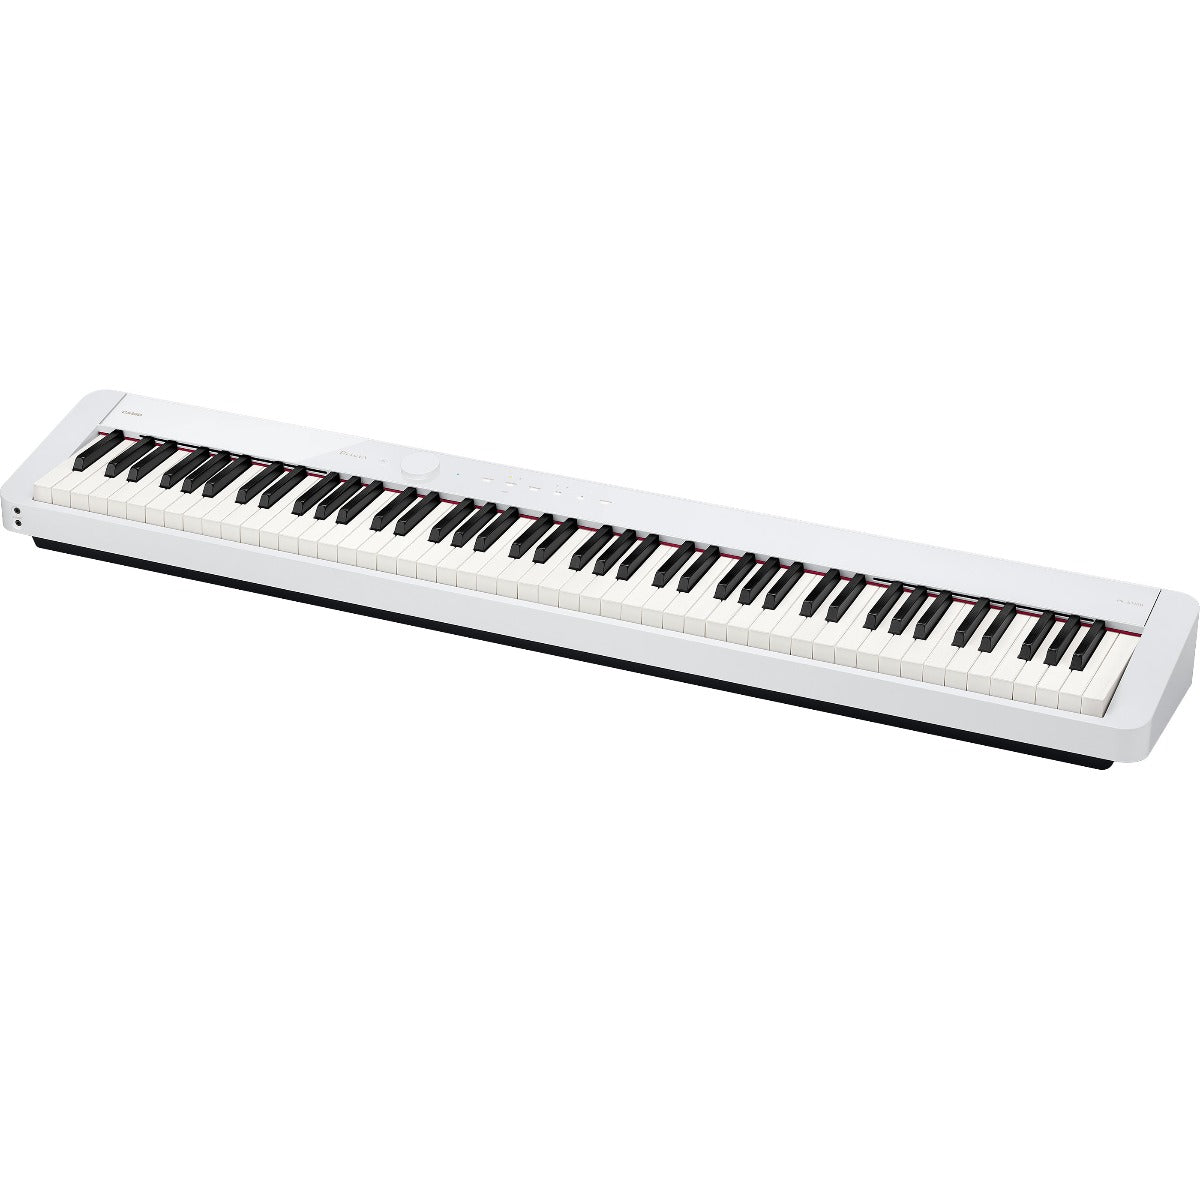 Casio Privia PX-S1100 Digital Piano - White BONUS PAK – Kraft Music